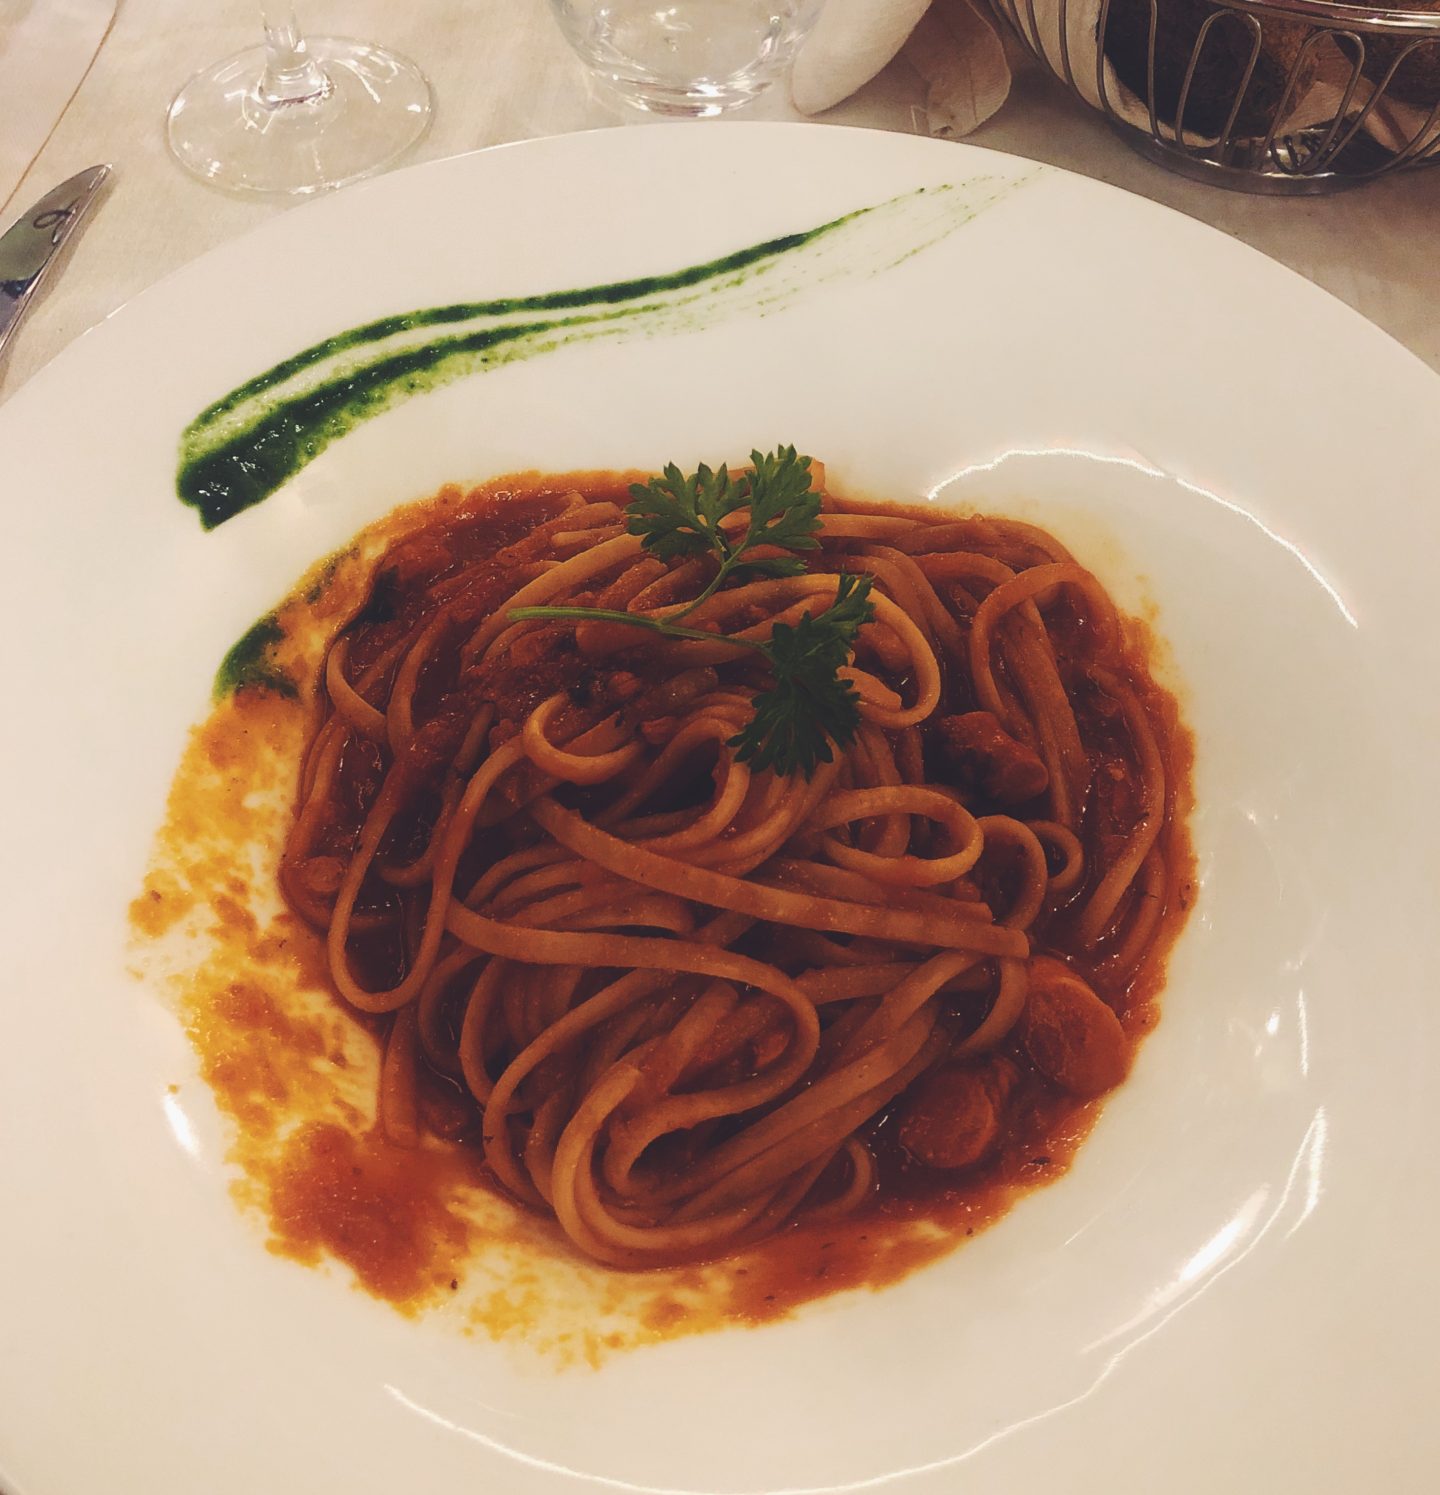 pasta in Sorrento Italy